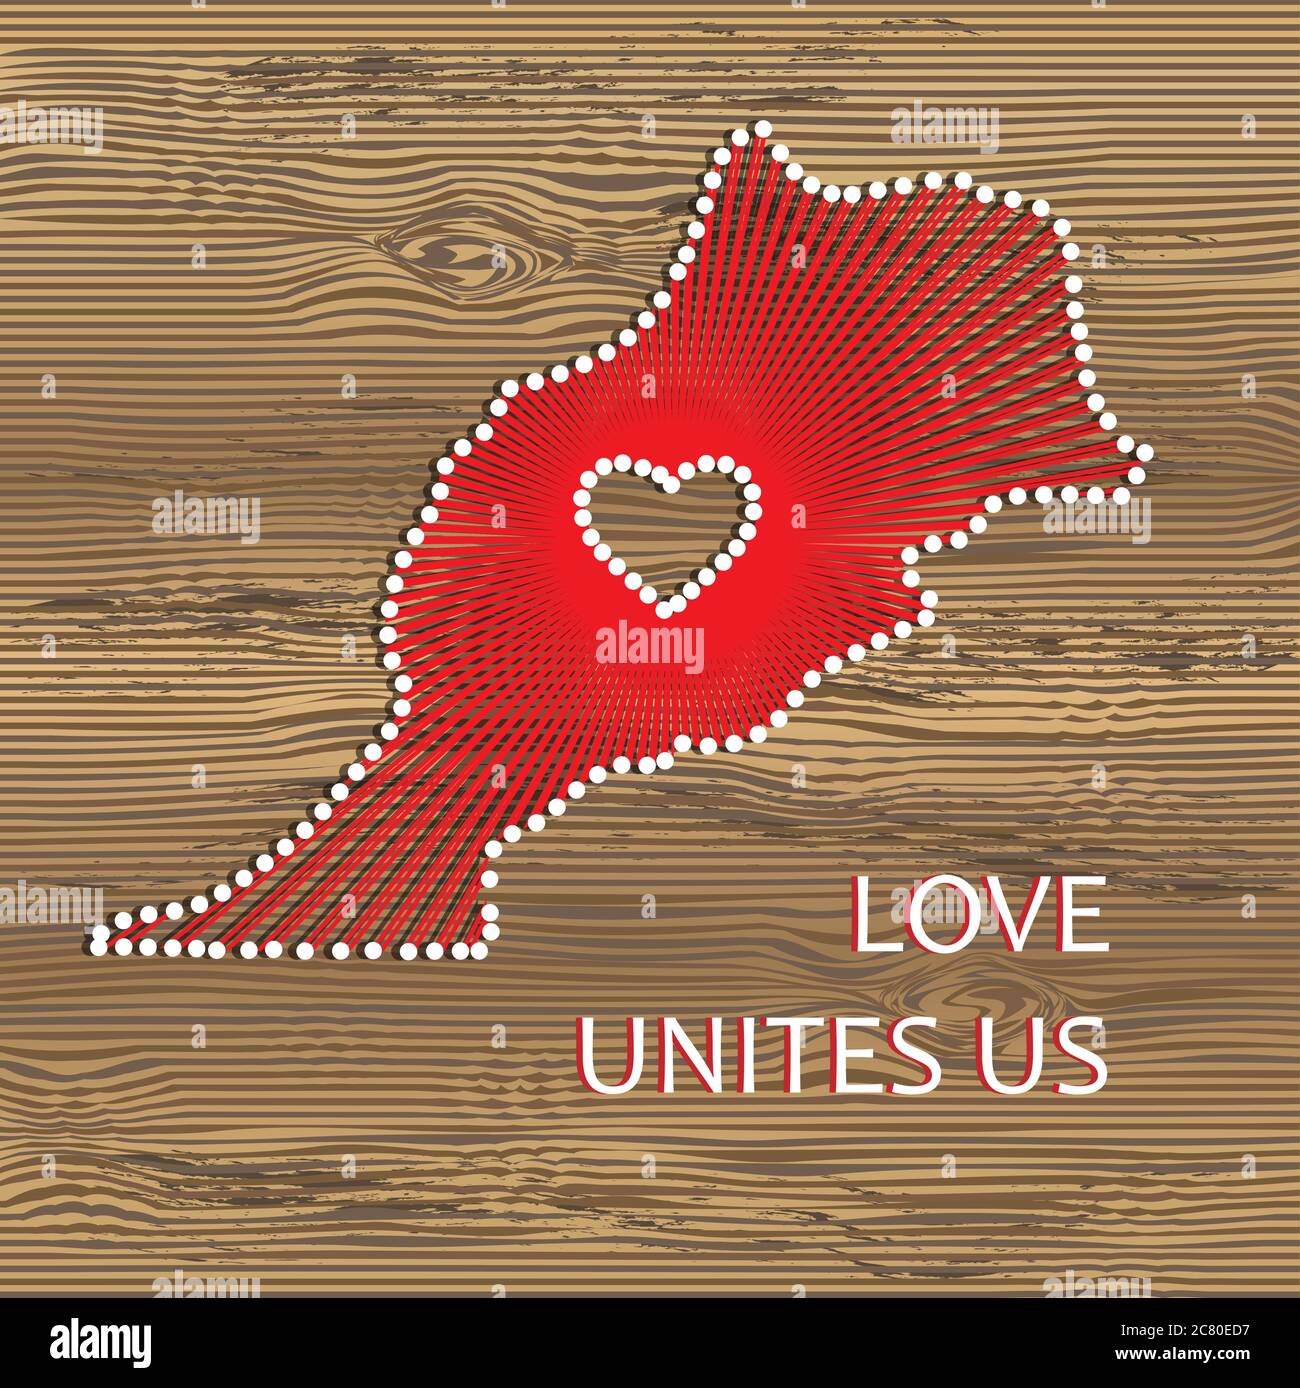 Carte vectorielle Maroc avec coeur. Ficelle, fil et broches sur texture bois. L'amour nous unit. Message d'amour. Carte d'art du Maroc Illustration de Vecteur